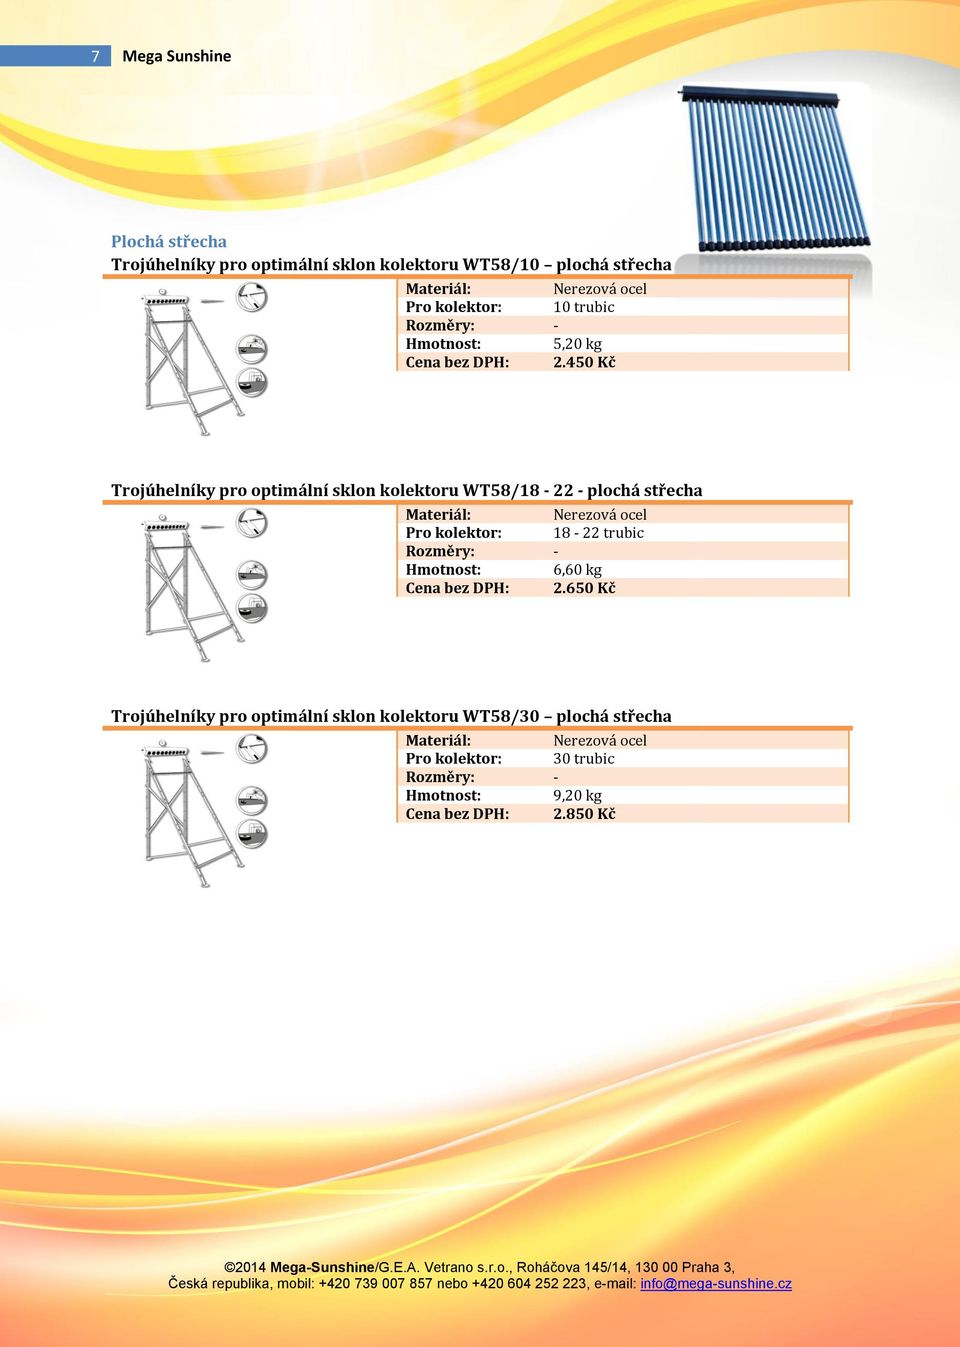 450 Kč Trojúhelníky pro optimální sklon kolektoru WT58/18-22 - plochá střecha Pro kolektor: 18-22